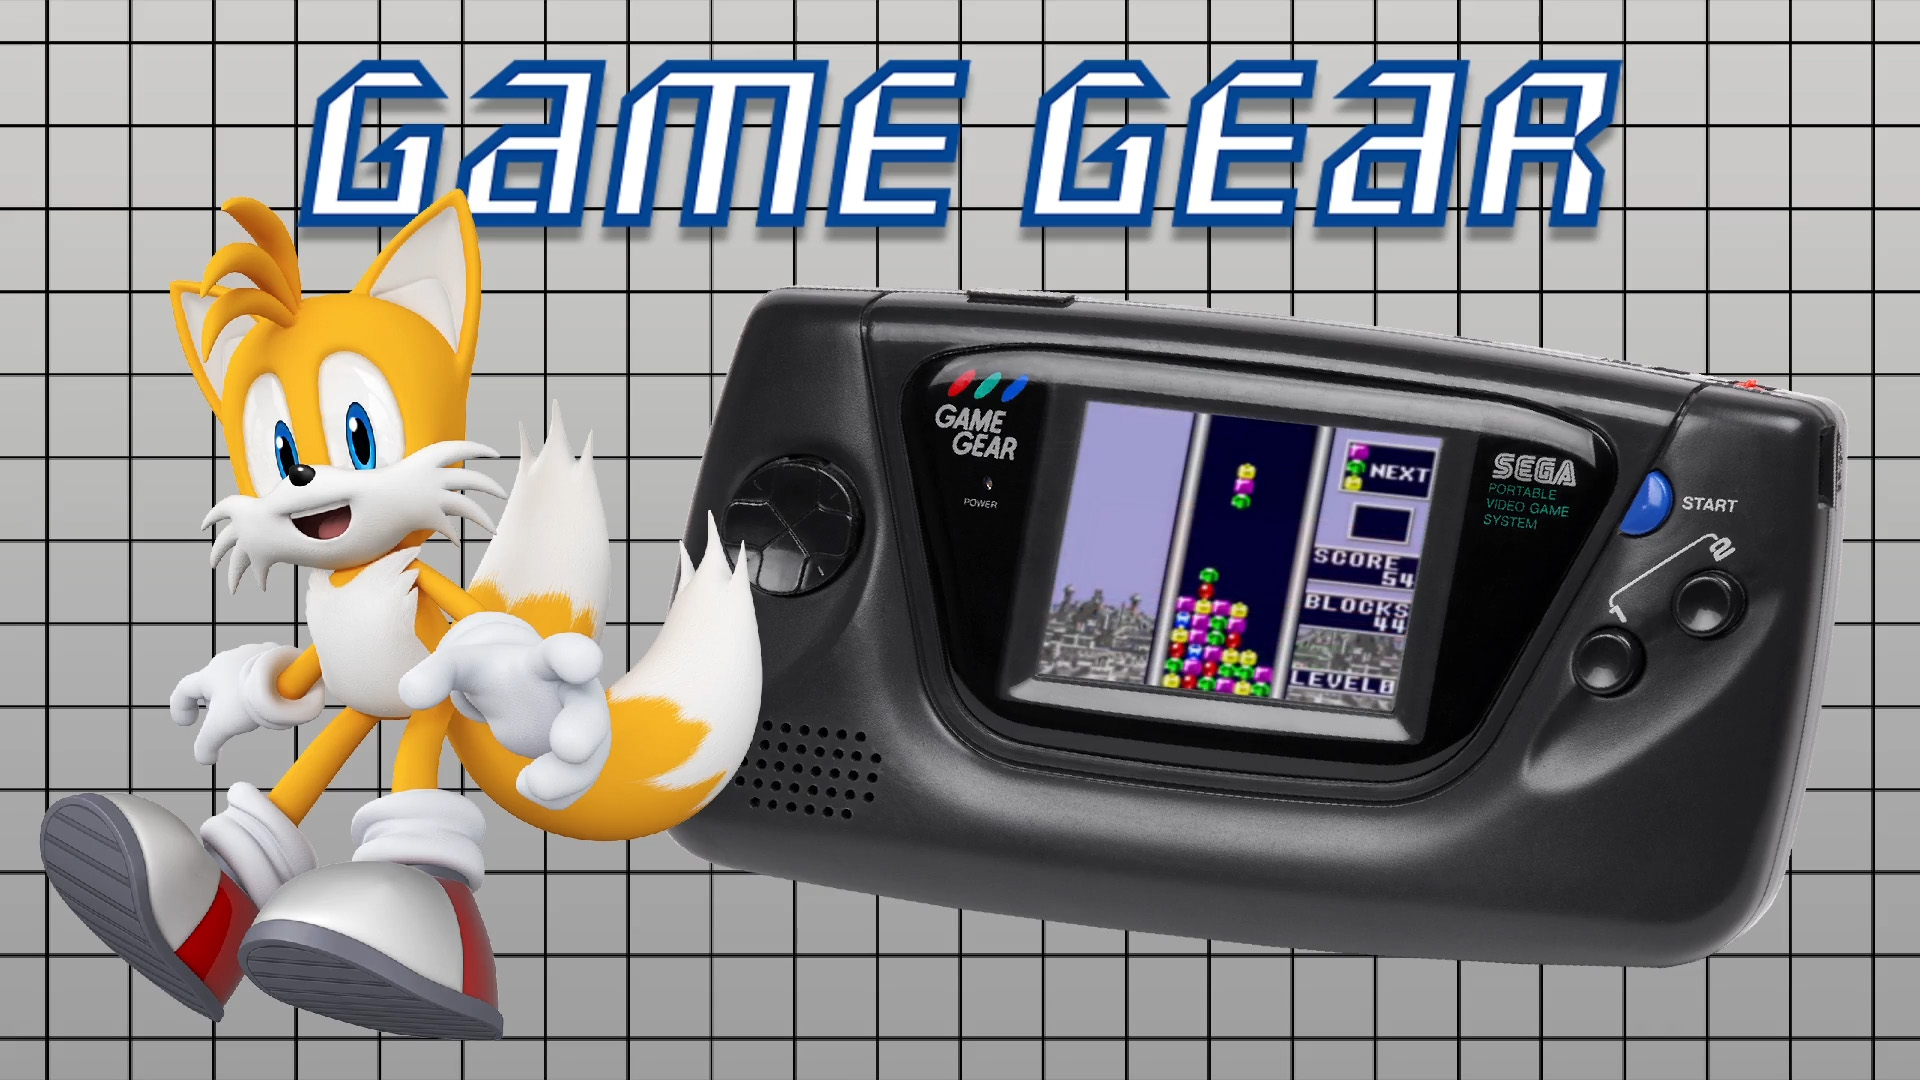 Sega Game Gear (Europe) Unified Platform Video